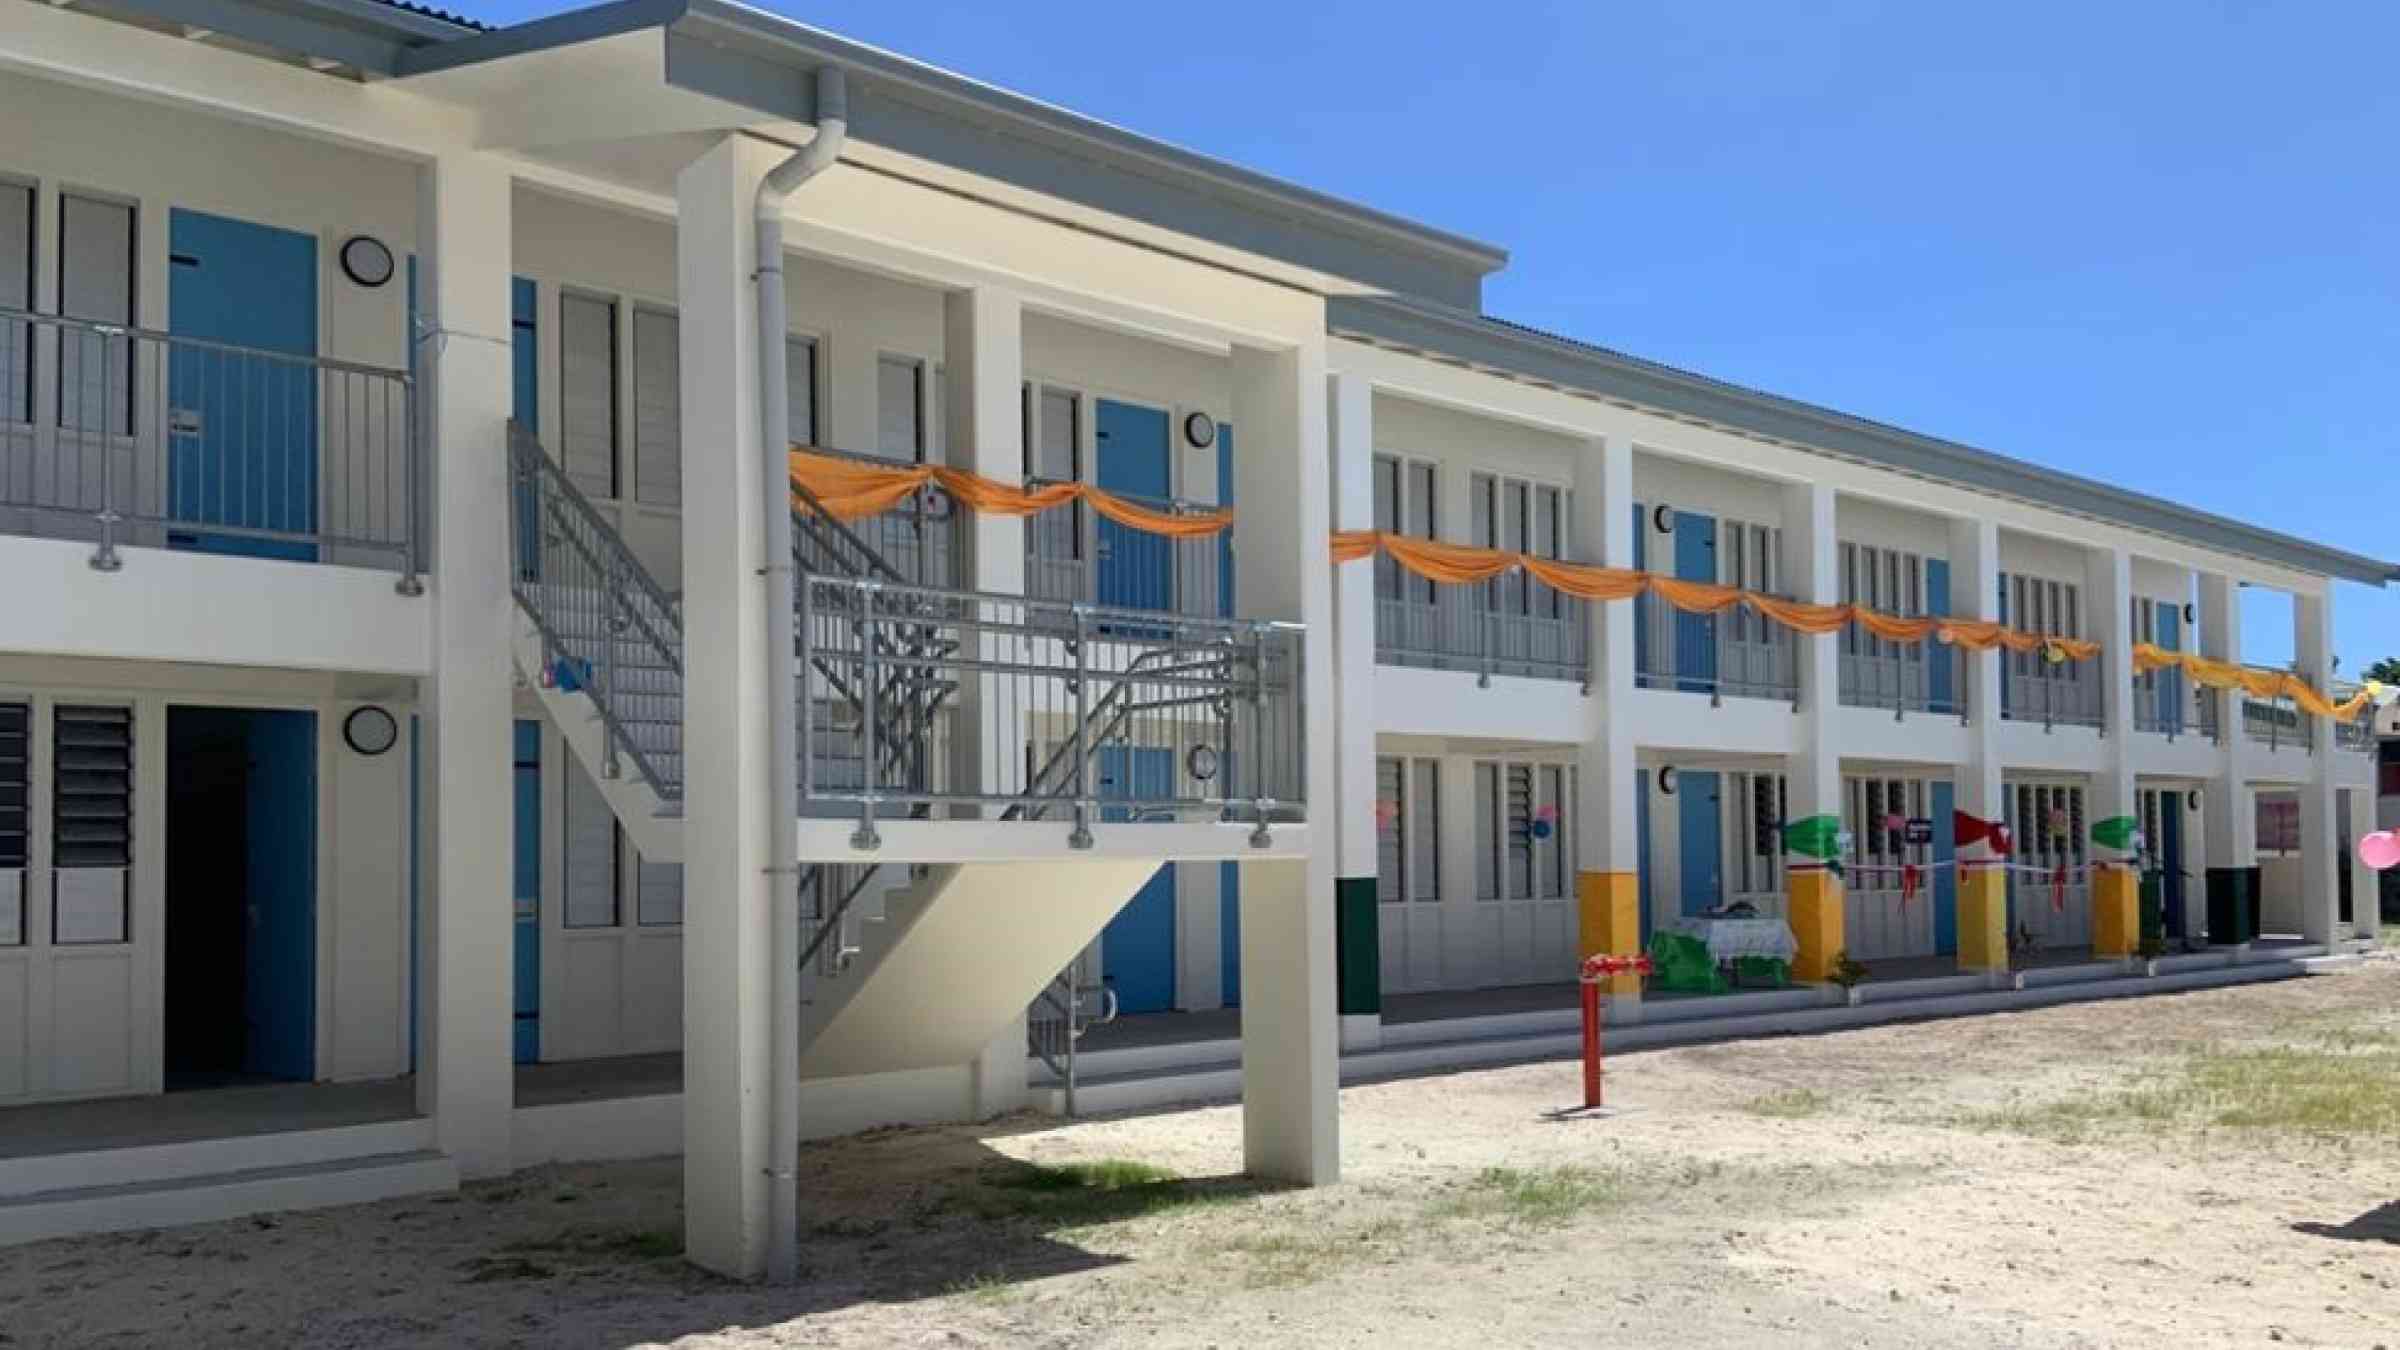 The Funafuti Classroom Building opened in 2020